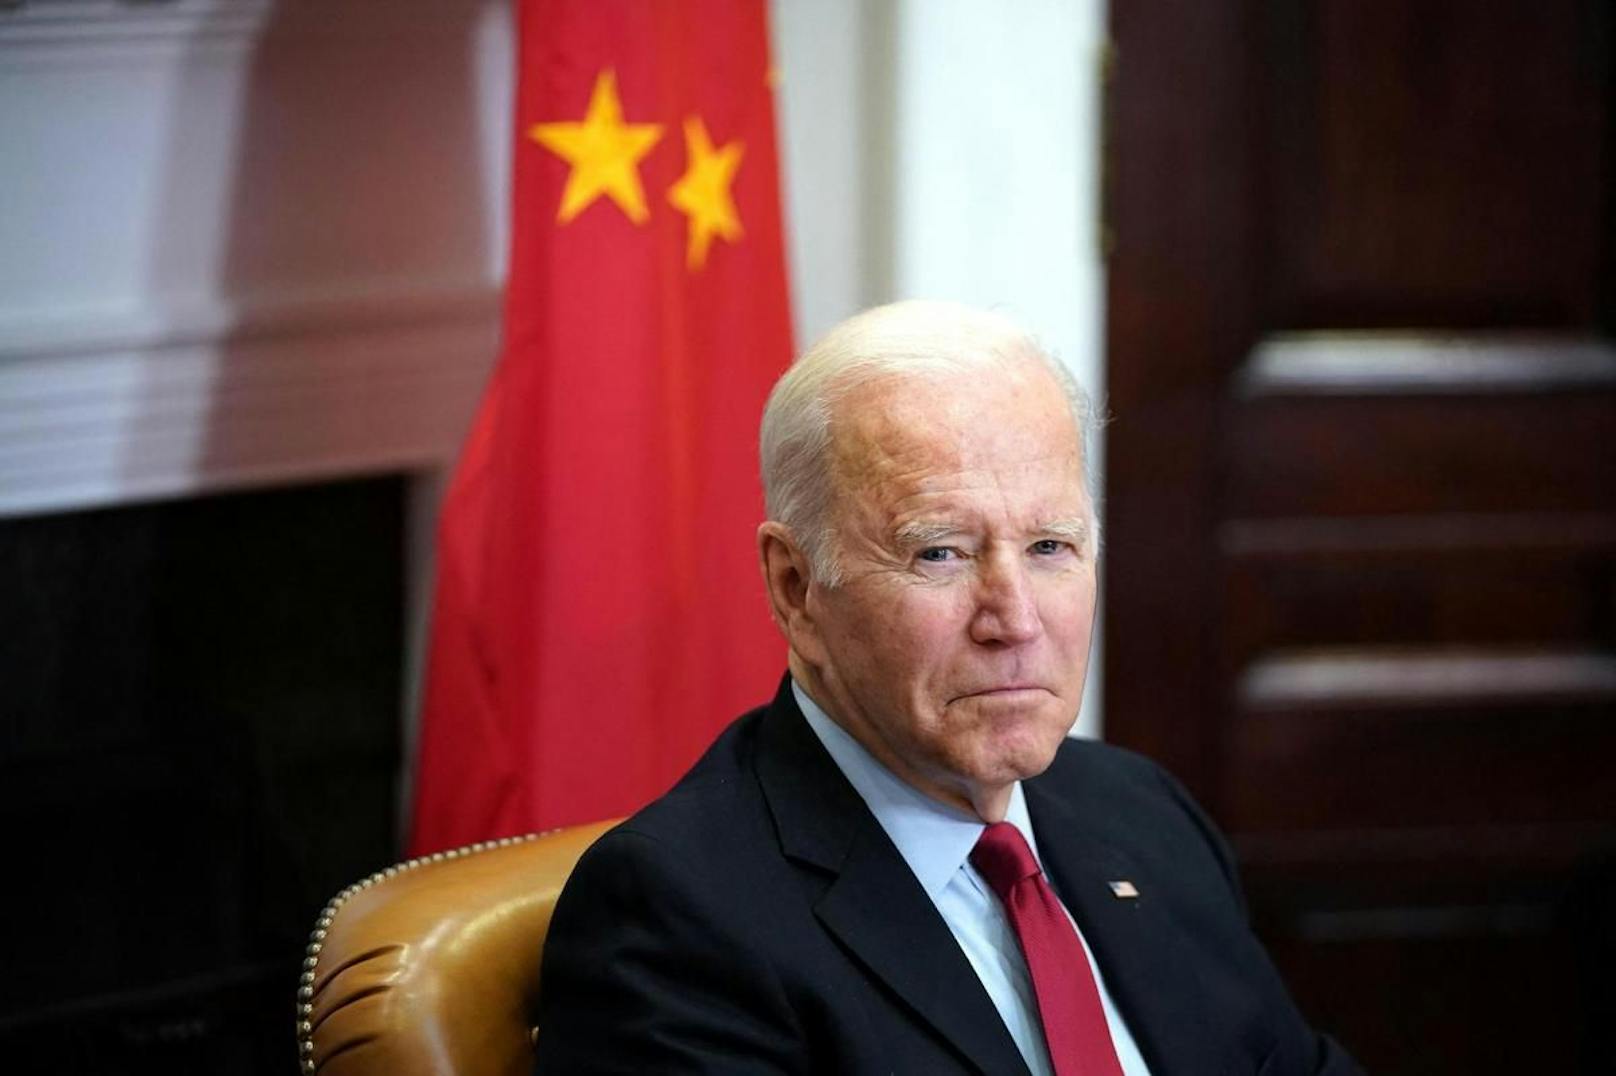 Biden sagte seinem chinesischen Gegenüber ein "offenes Gespräch" zu.